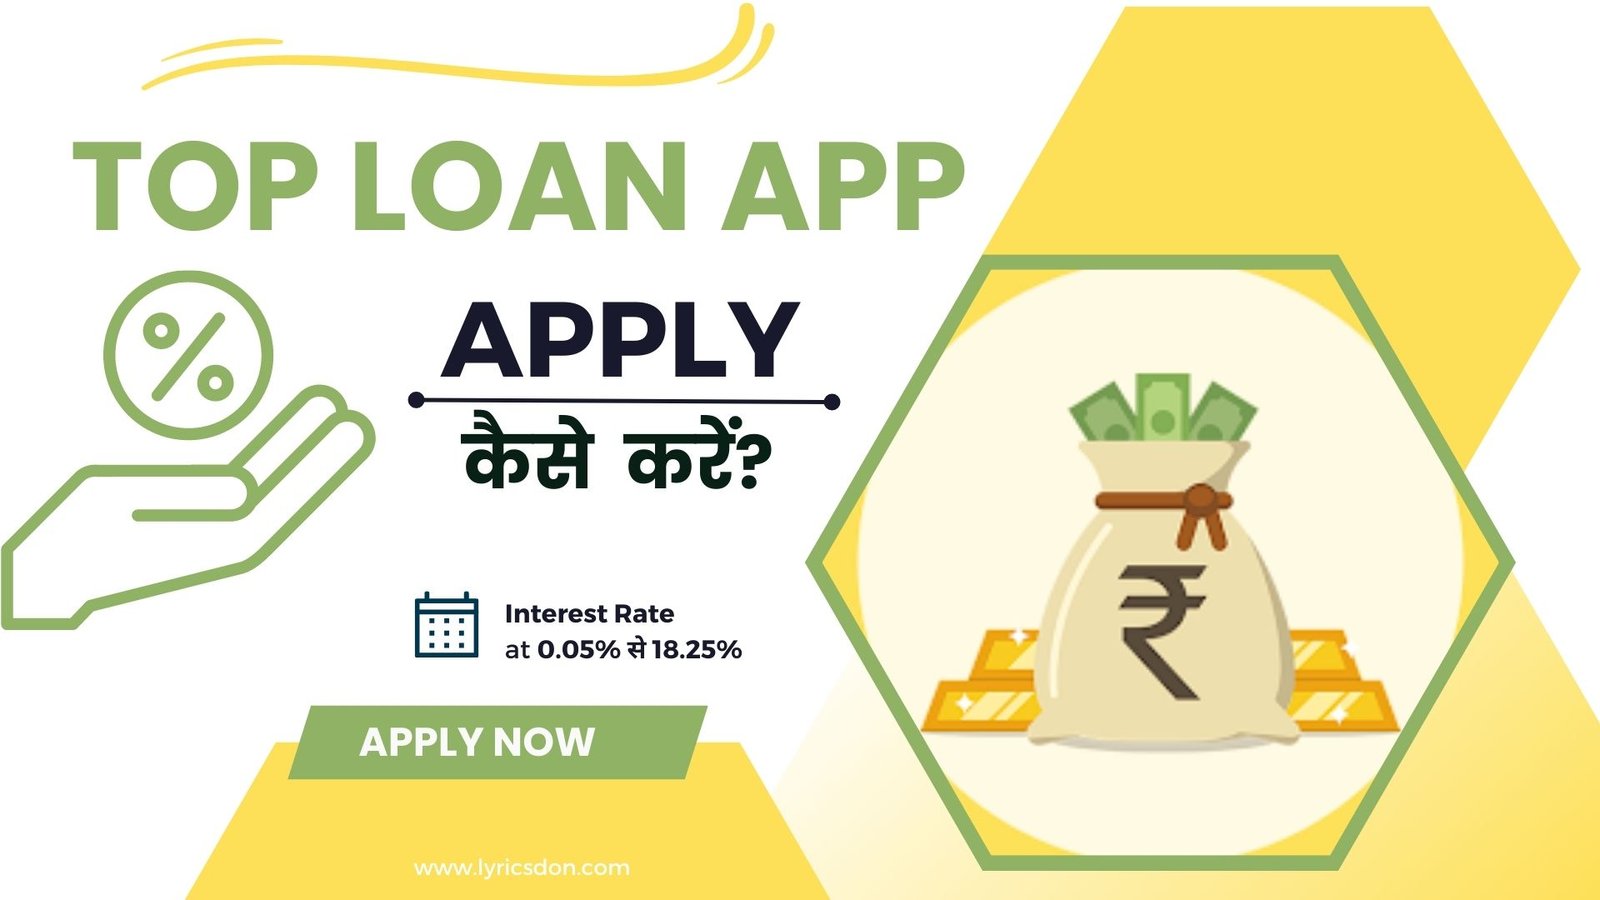 Top Loan App से लोन कैसे लें?